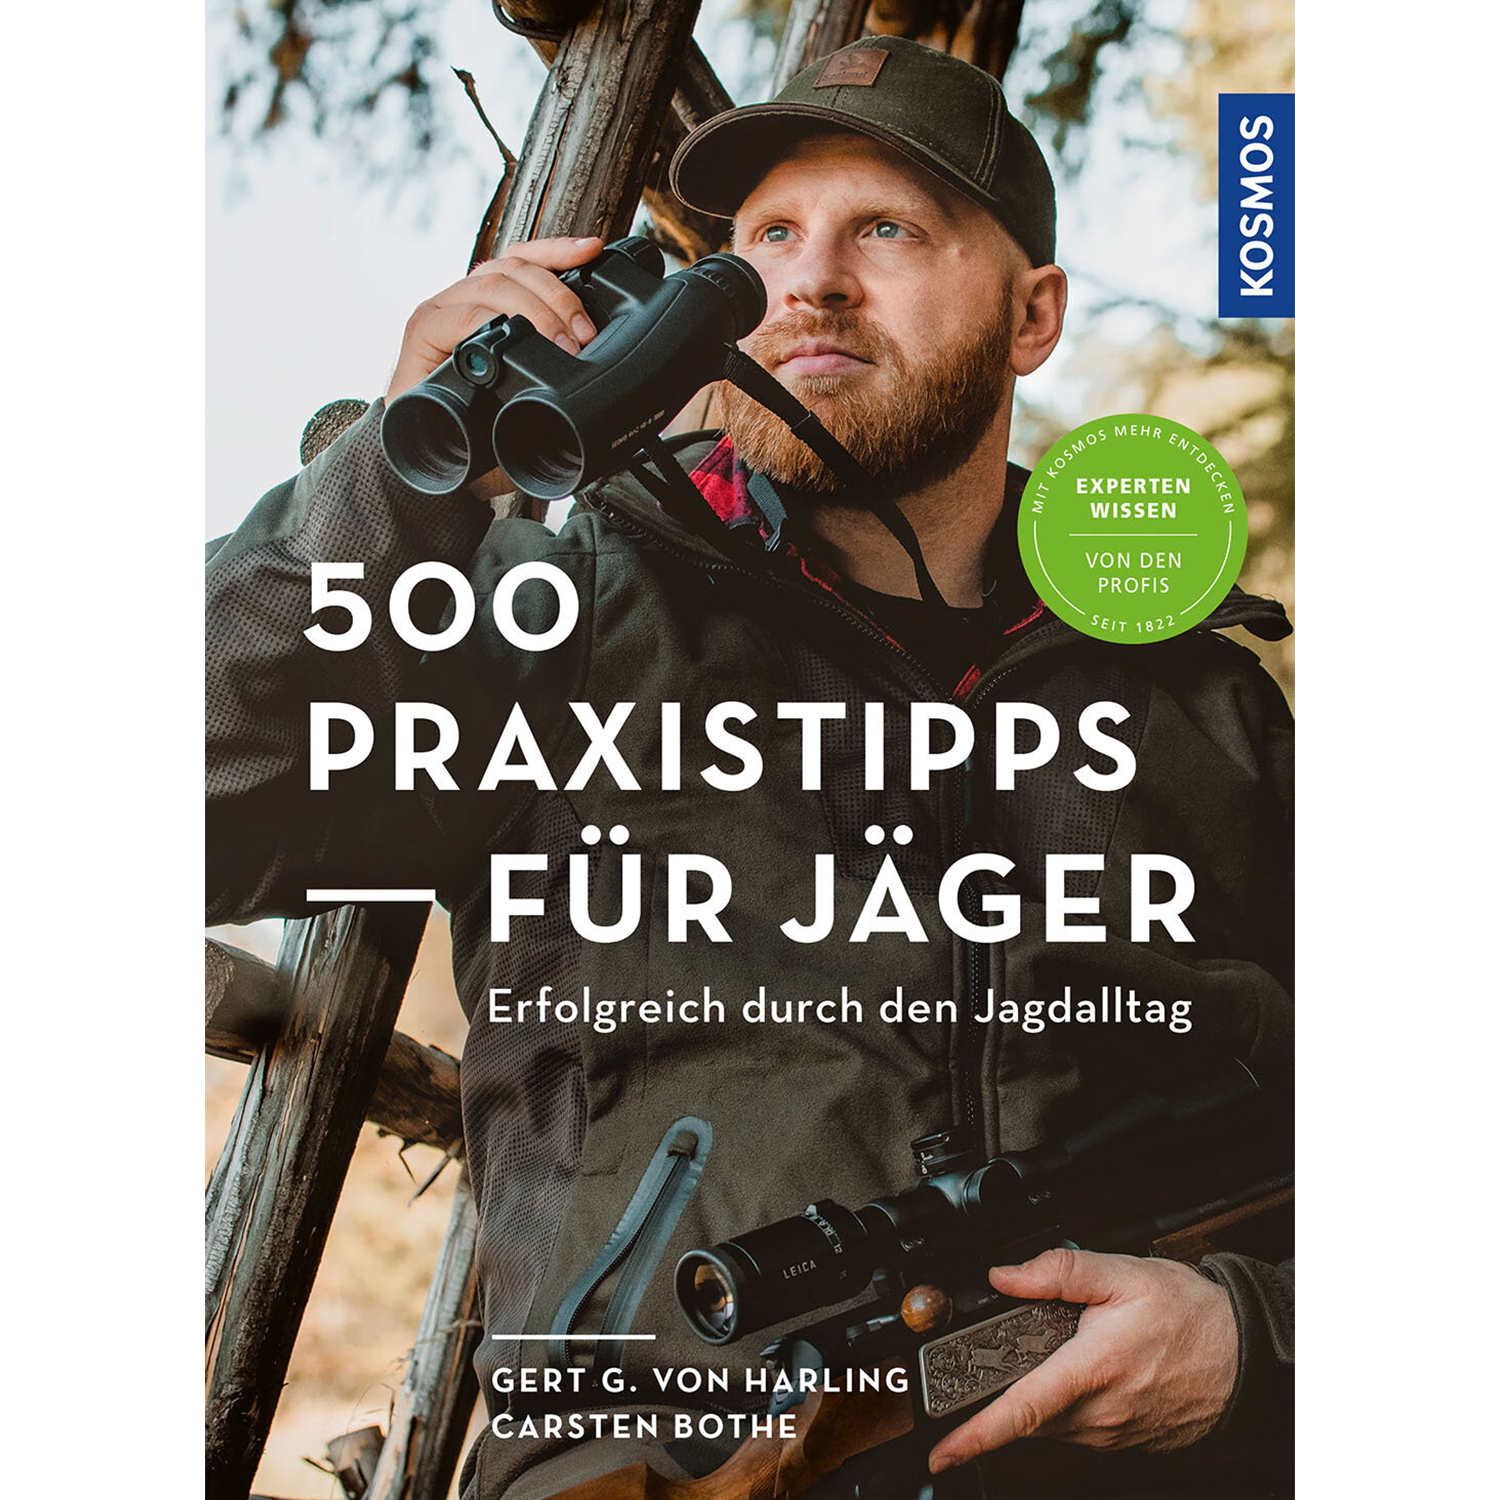 500 Praxistipps für Jäger - Buch - Harling & Bothe - Jagdbücher